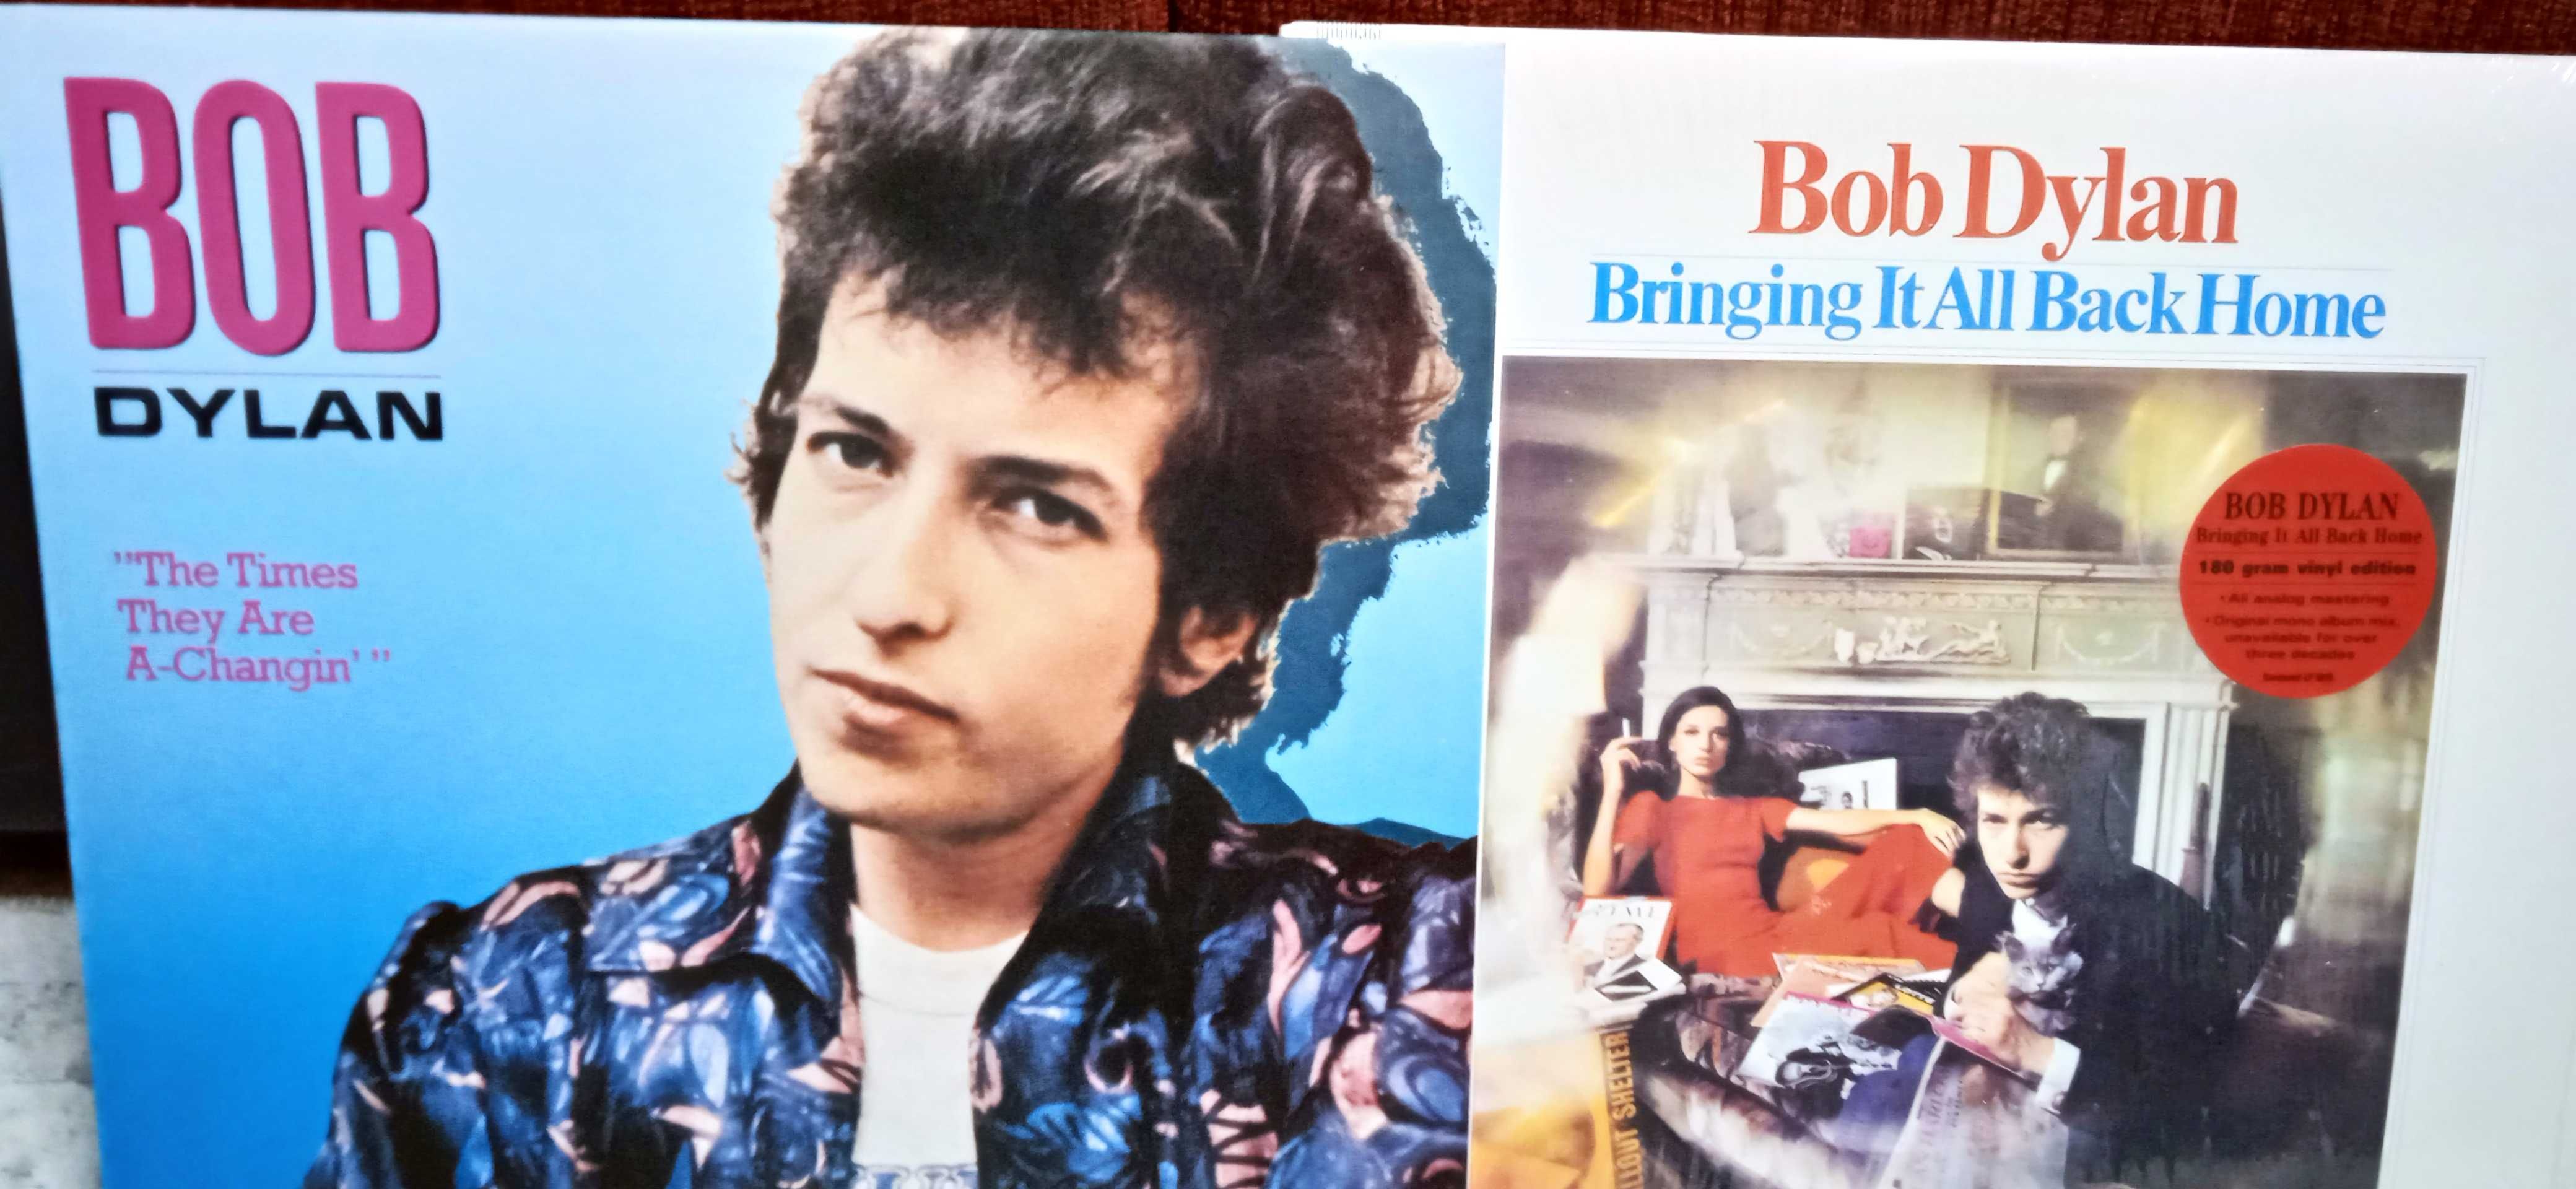 виниловая пластинка Bob Dylan